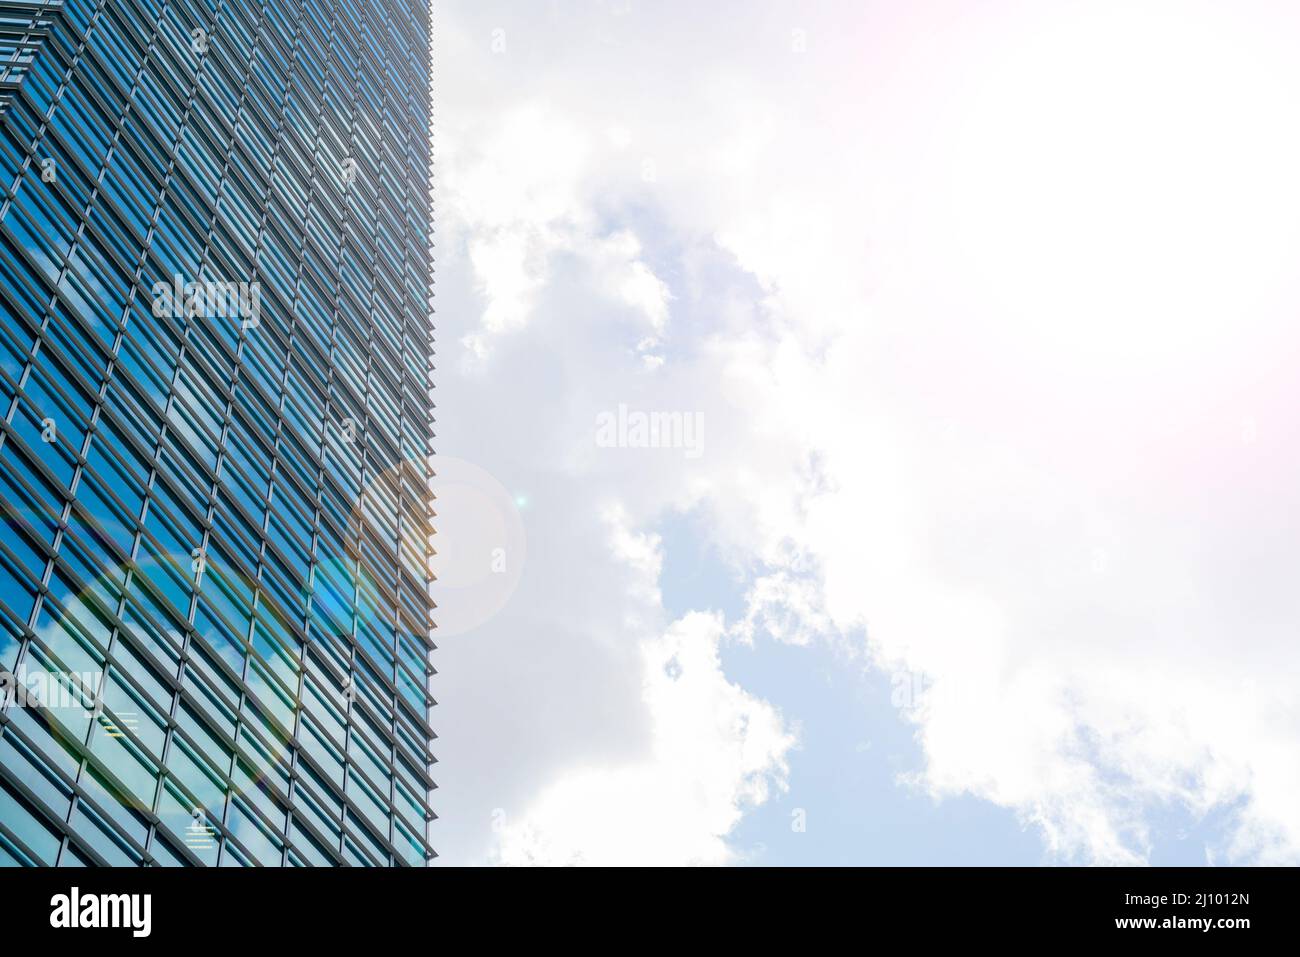 Grattacieli di vetro nel centro della citta'. Edifici moderni. Foto Stock